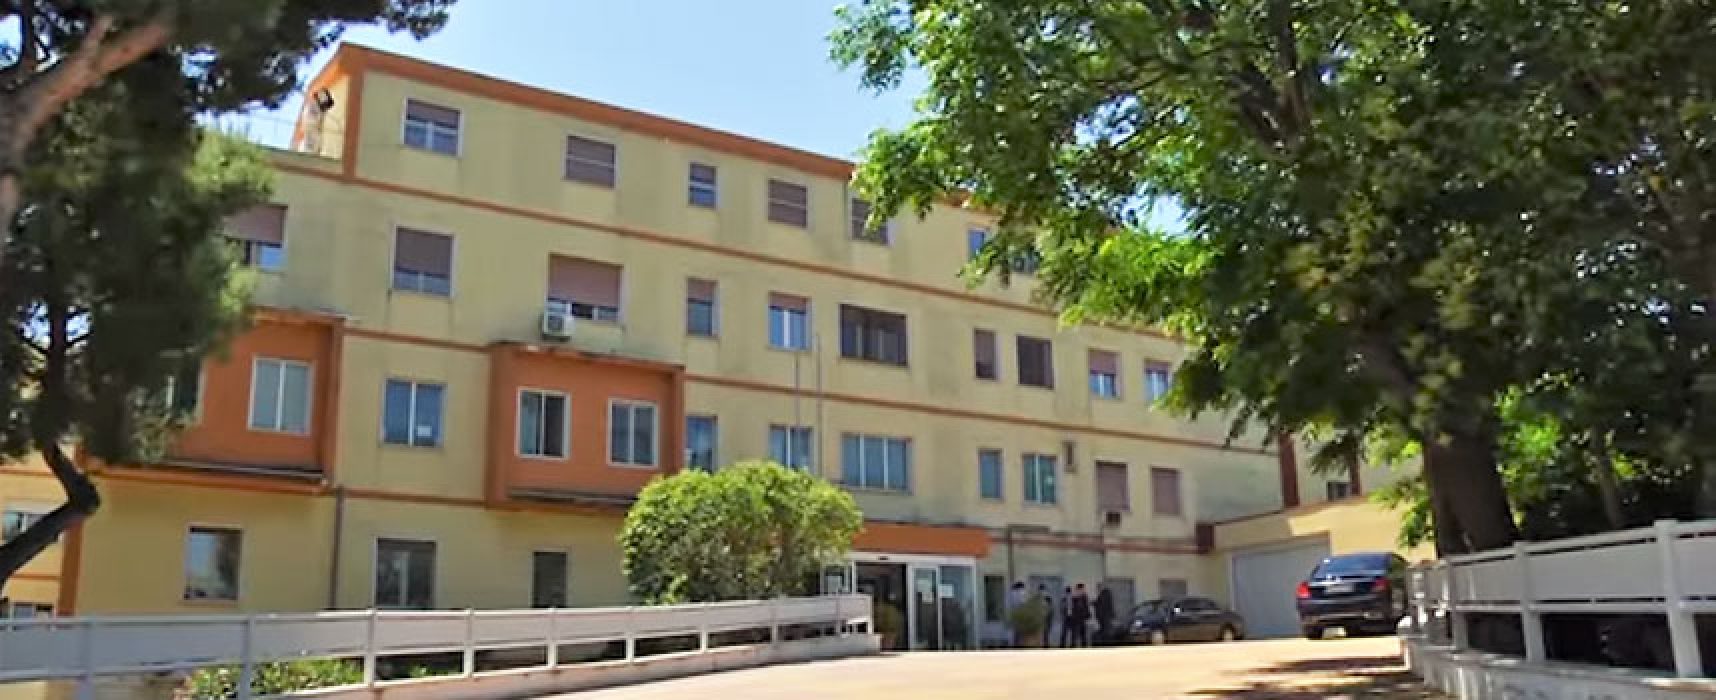 Ospedale Bisceglie resta presidio Covid, Delle Donne: “Ci auguriamo di poterlo riconvertire presto”